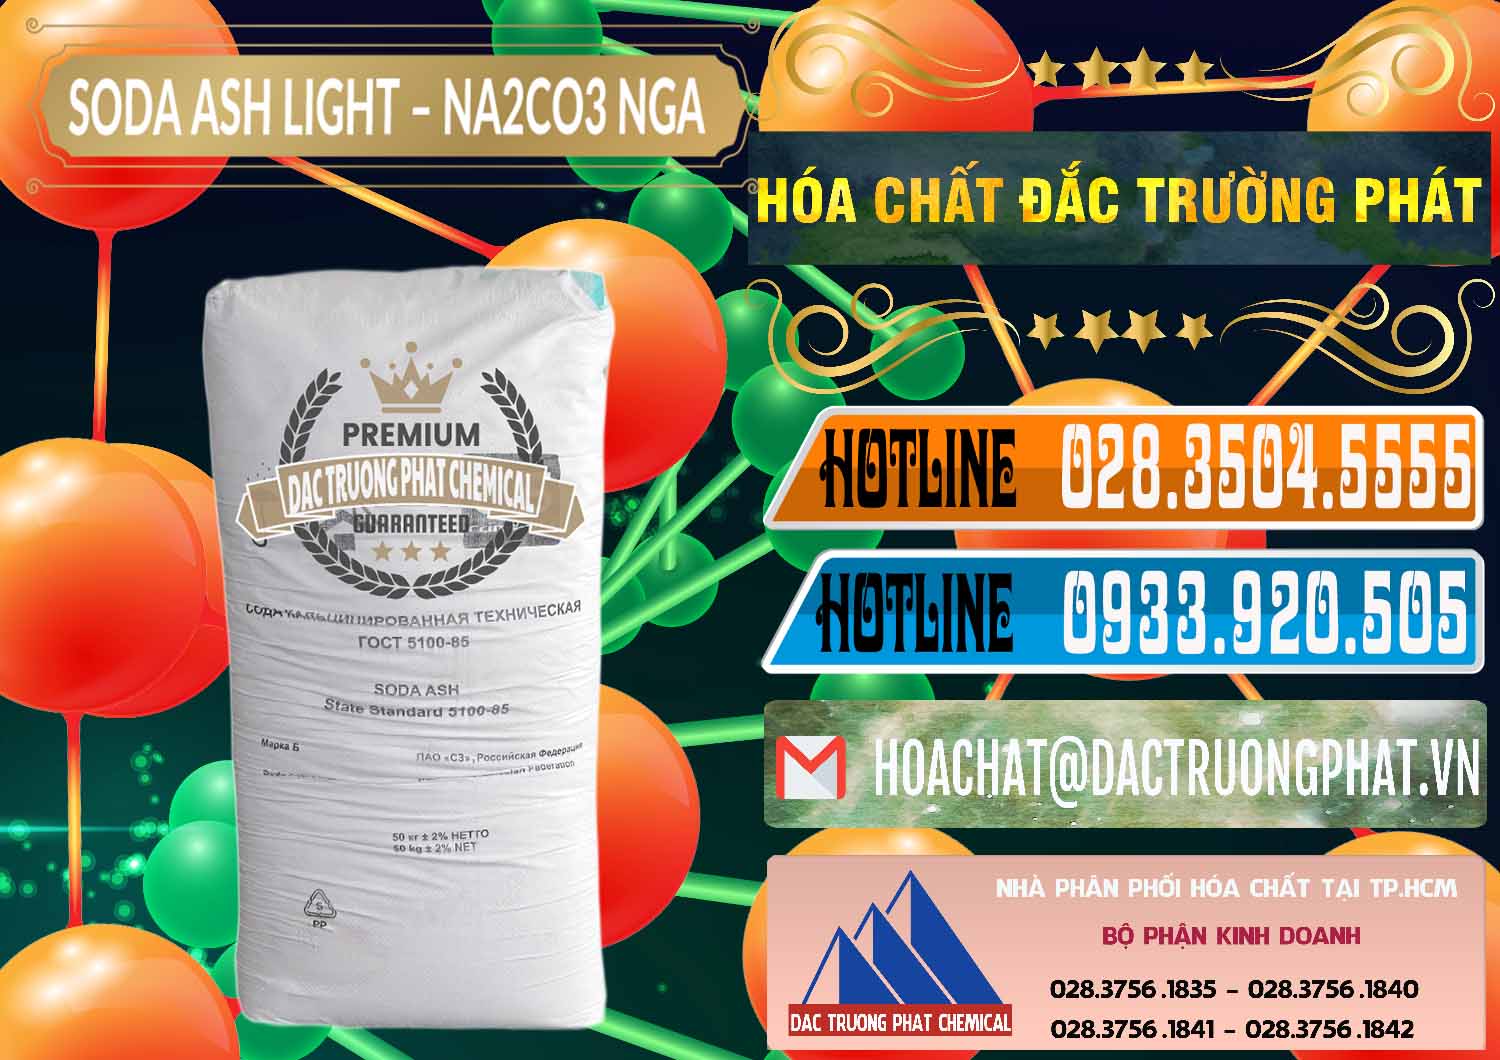 Cty bán ( cung ứng ) Soda Ash Light - NA2CO3 Nga Russia - 0128 - Chuyên bán _ cung cấp hóa chất tại TP.HCM - stmp.net